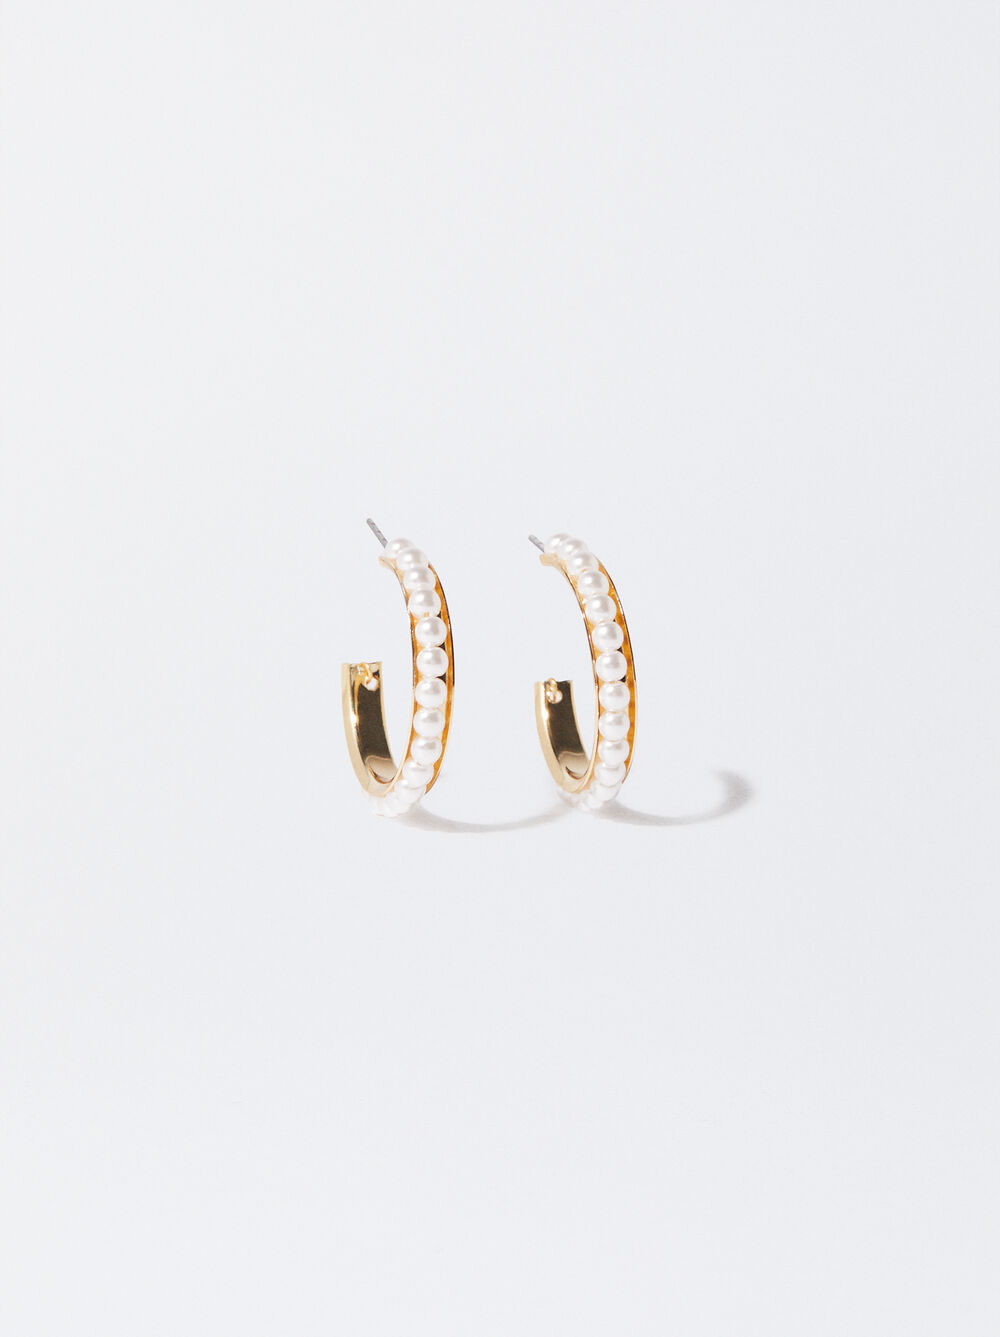 Golden Hoop Earrings With Pearls